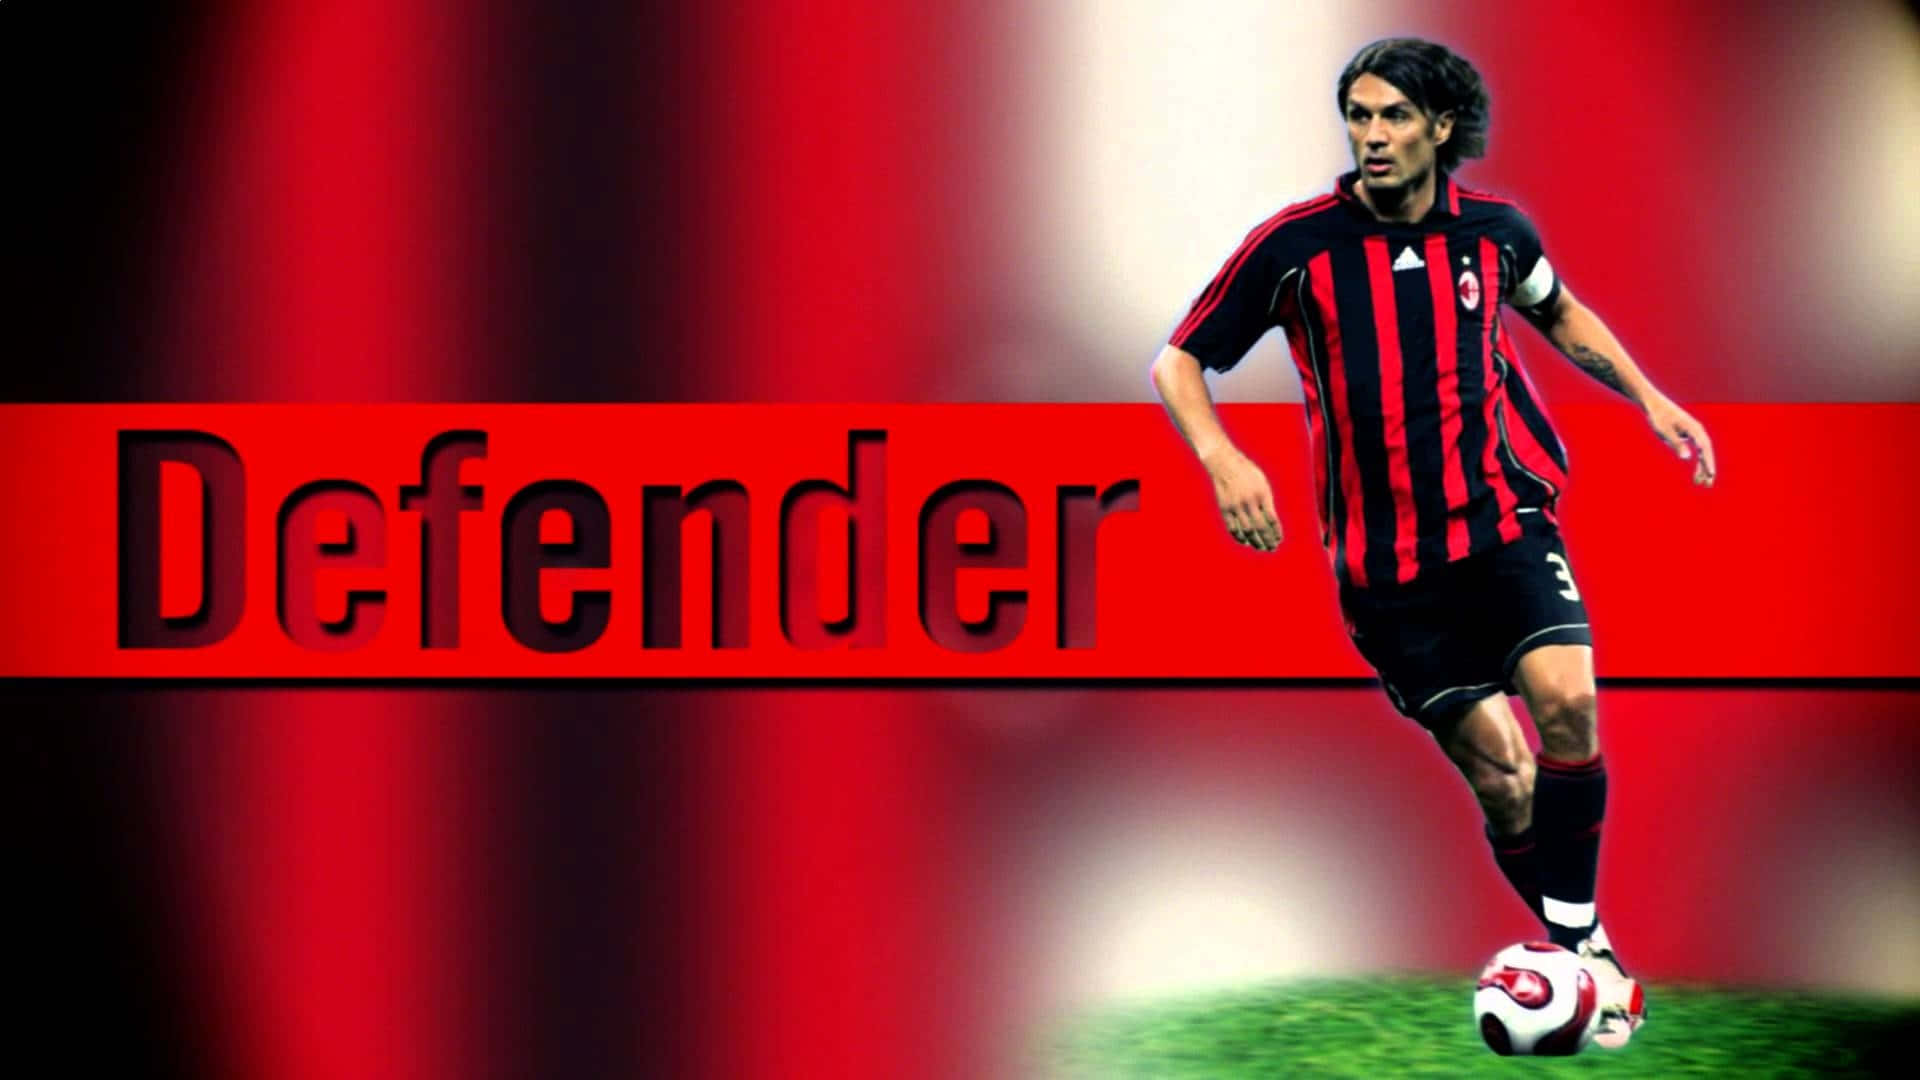 The Great Defender Paolo Maldini Background